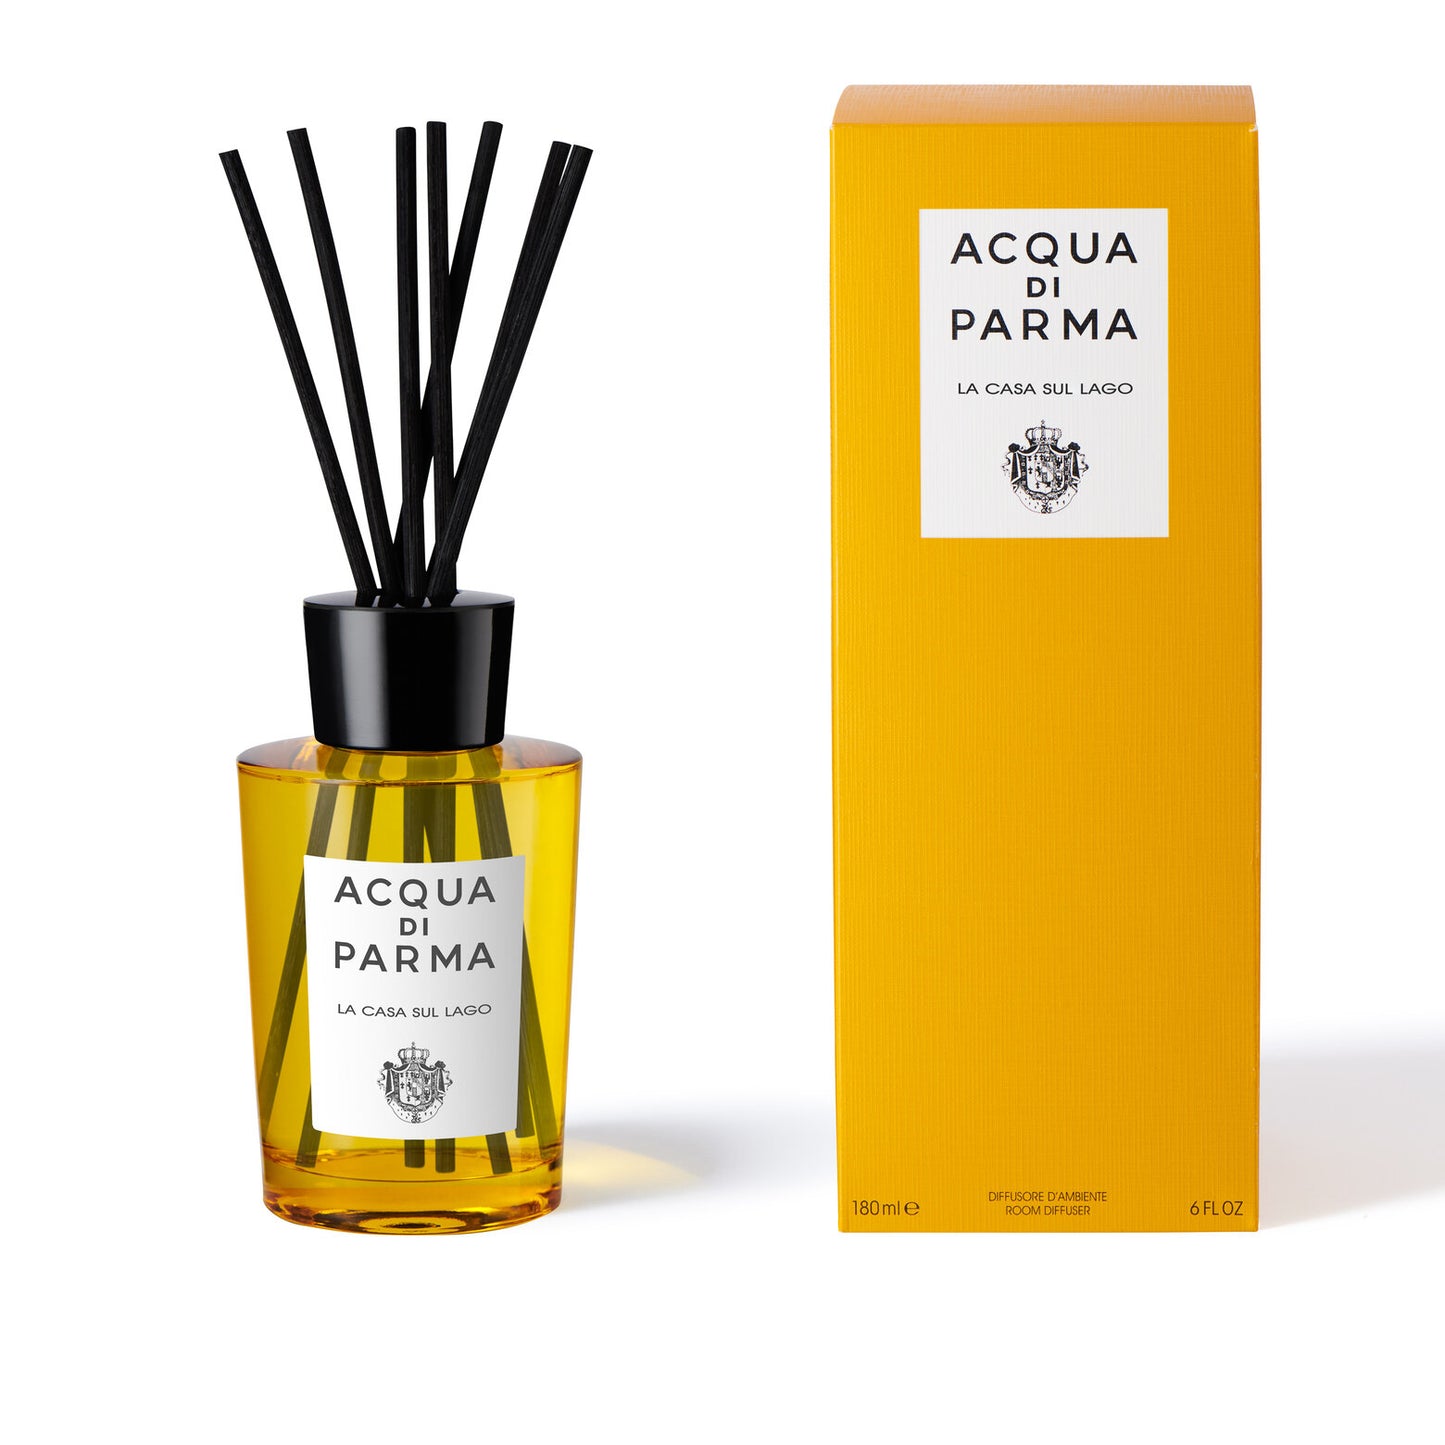 Aqua di parma - Diffuseur de parfum - La Casa Sul Lago